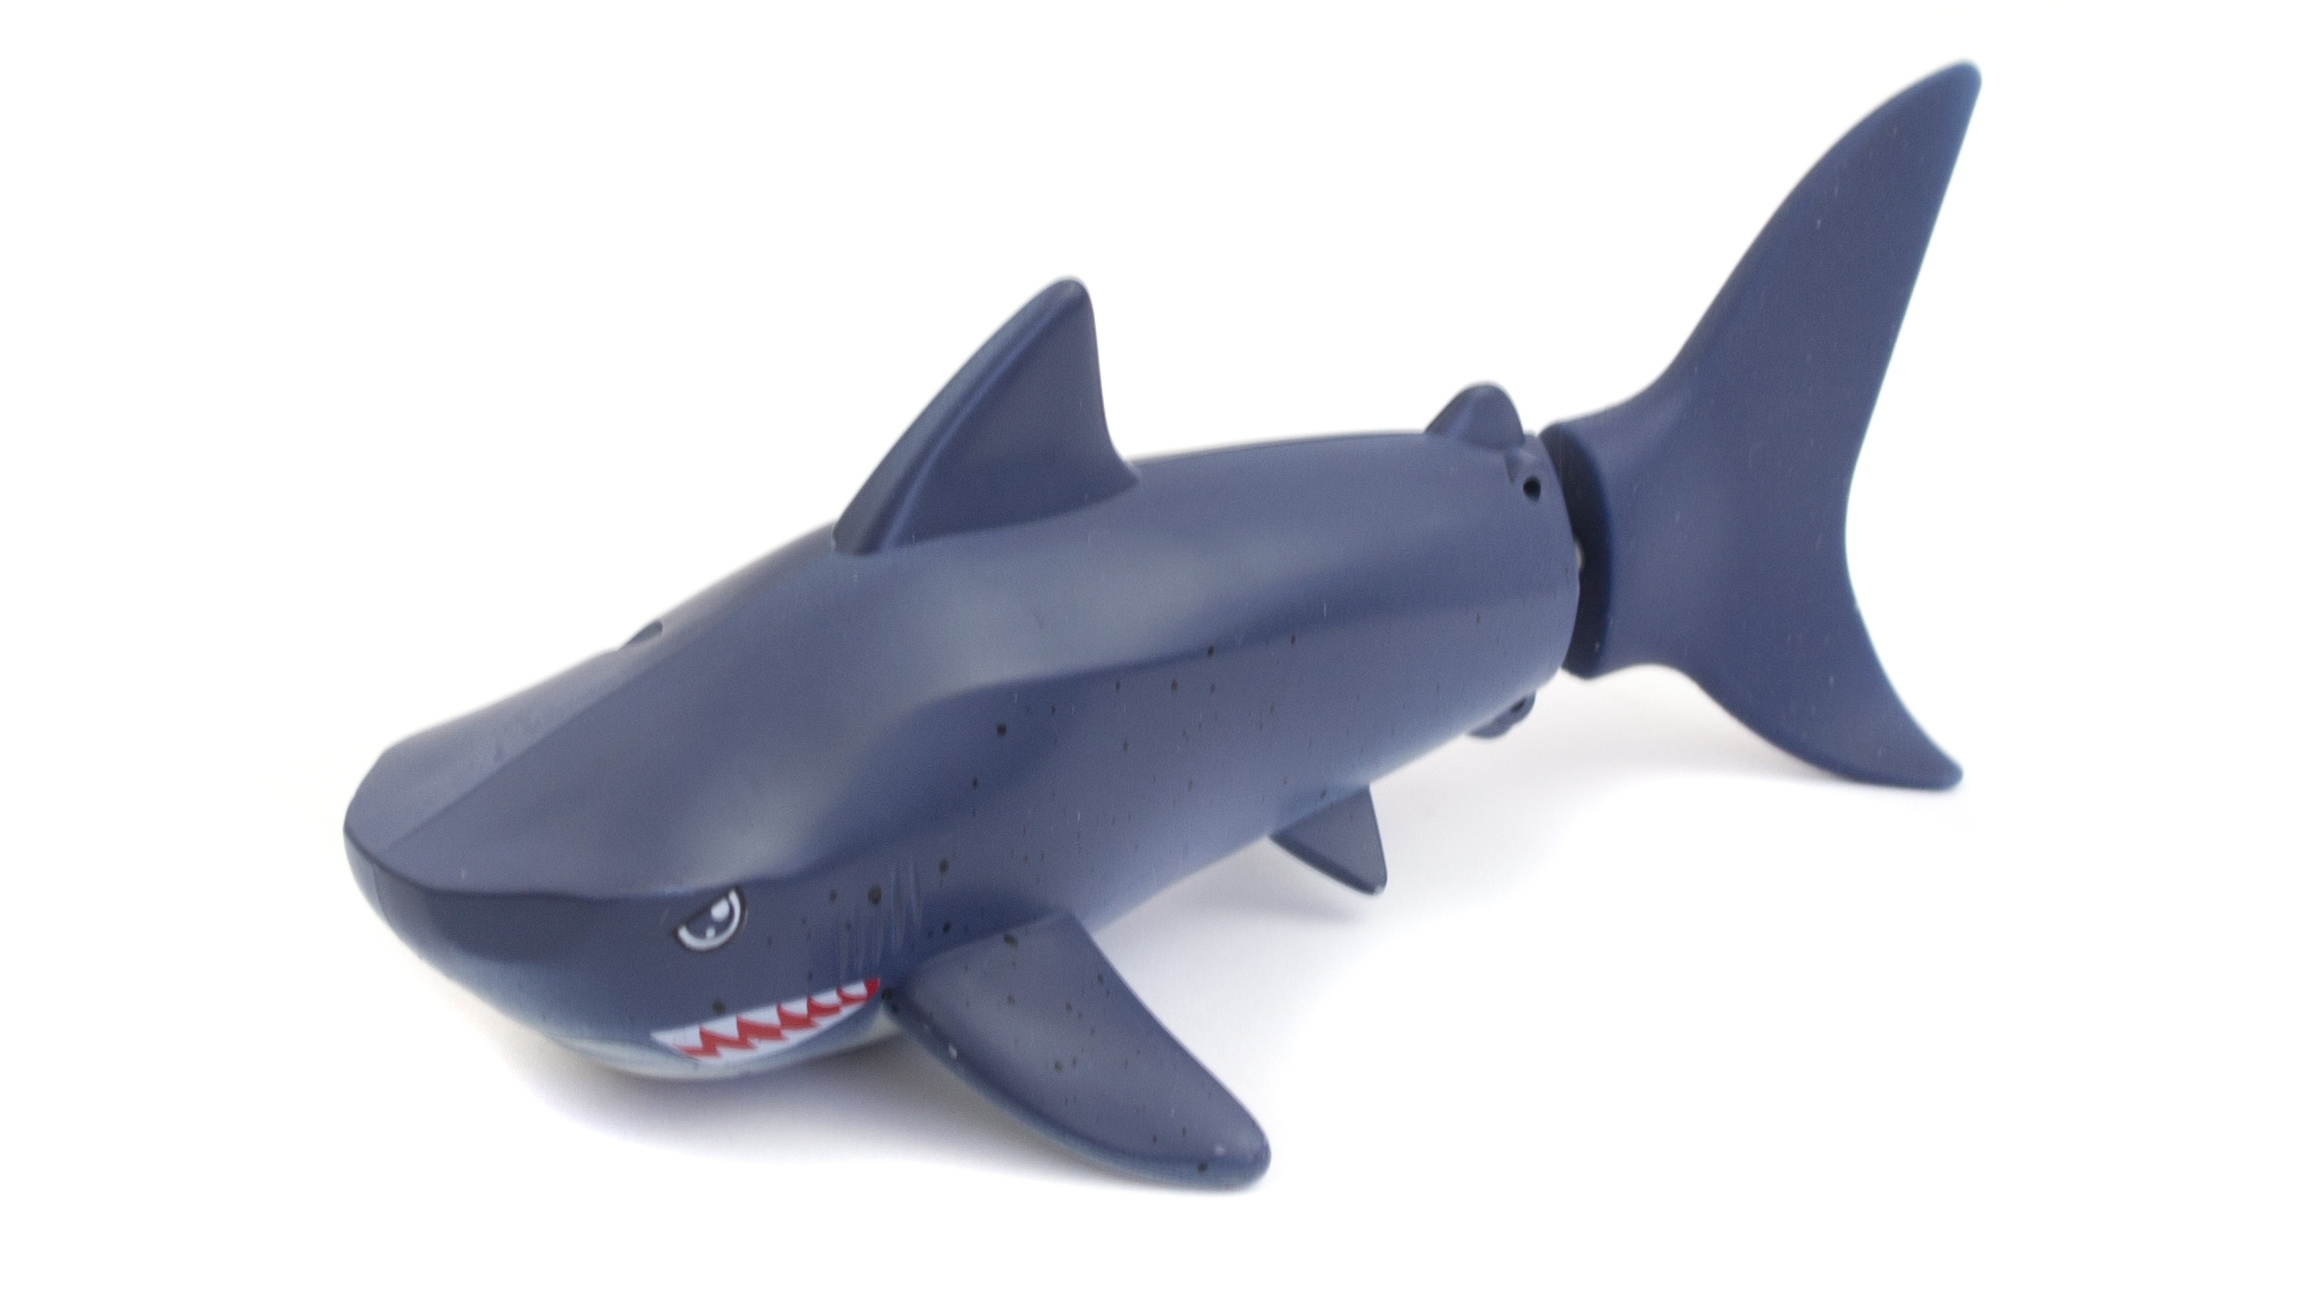 Радиоуправляемая акула XK-Innovation, 27 MHz Create Toys 3310H-BLUE